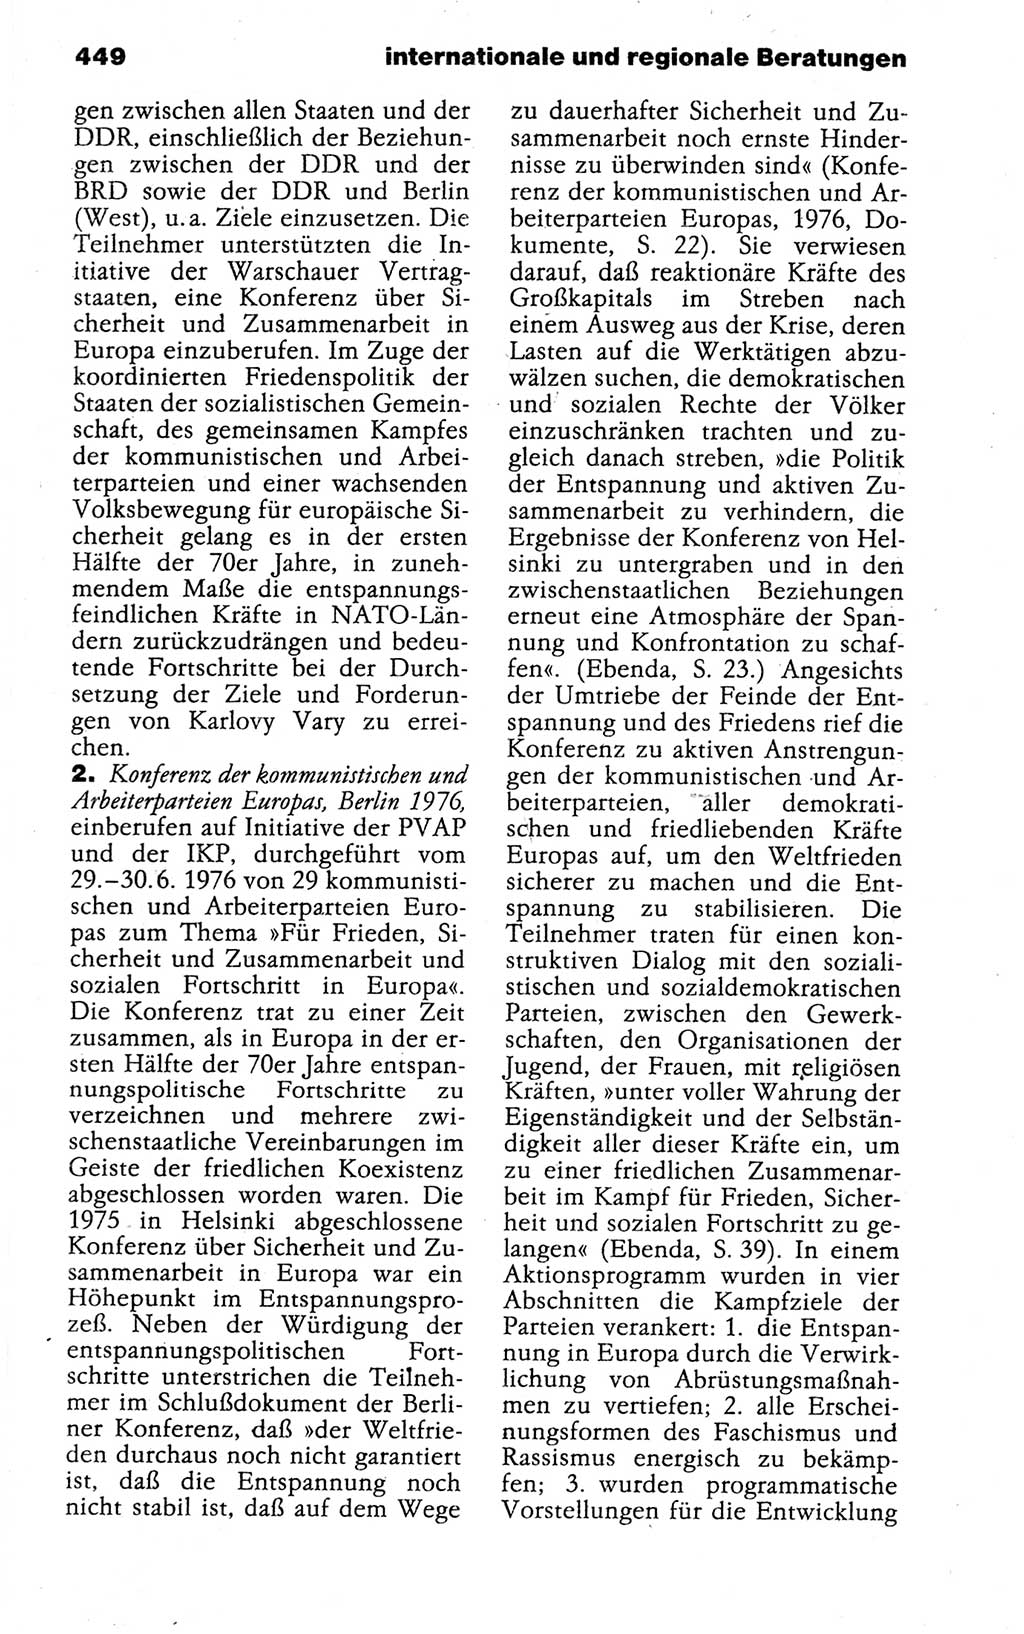 Kleines politisches Wörterbuch [Deutsche Demokratische Republik (DDR)] 1988, Seite 449 (Kl. pol. Wb. DDR 1988, S. 449)